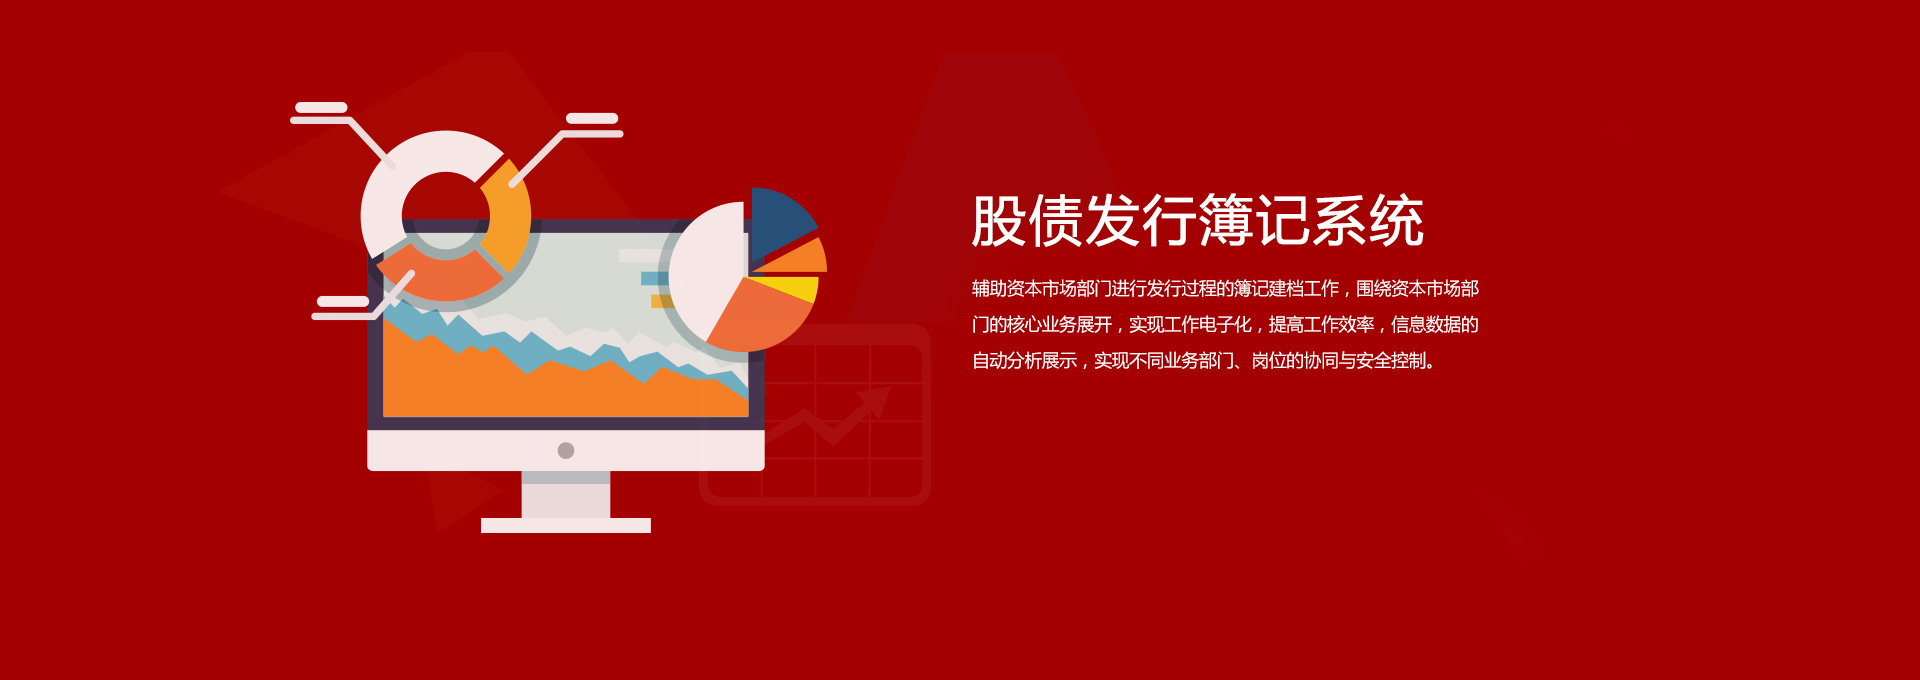 关于当前产品1396j皇家彩世界·(中国)官方网站的成功案例等相关图片